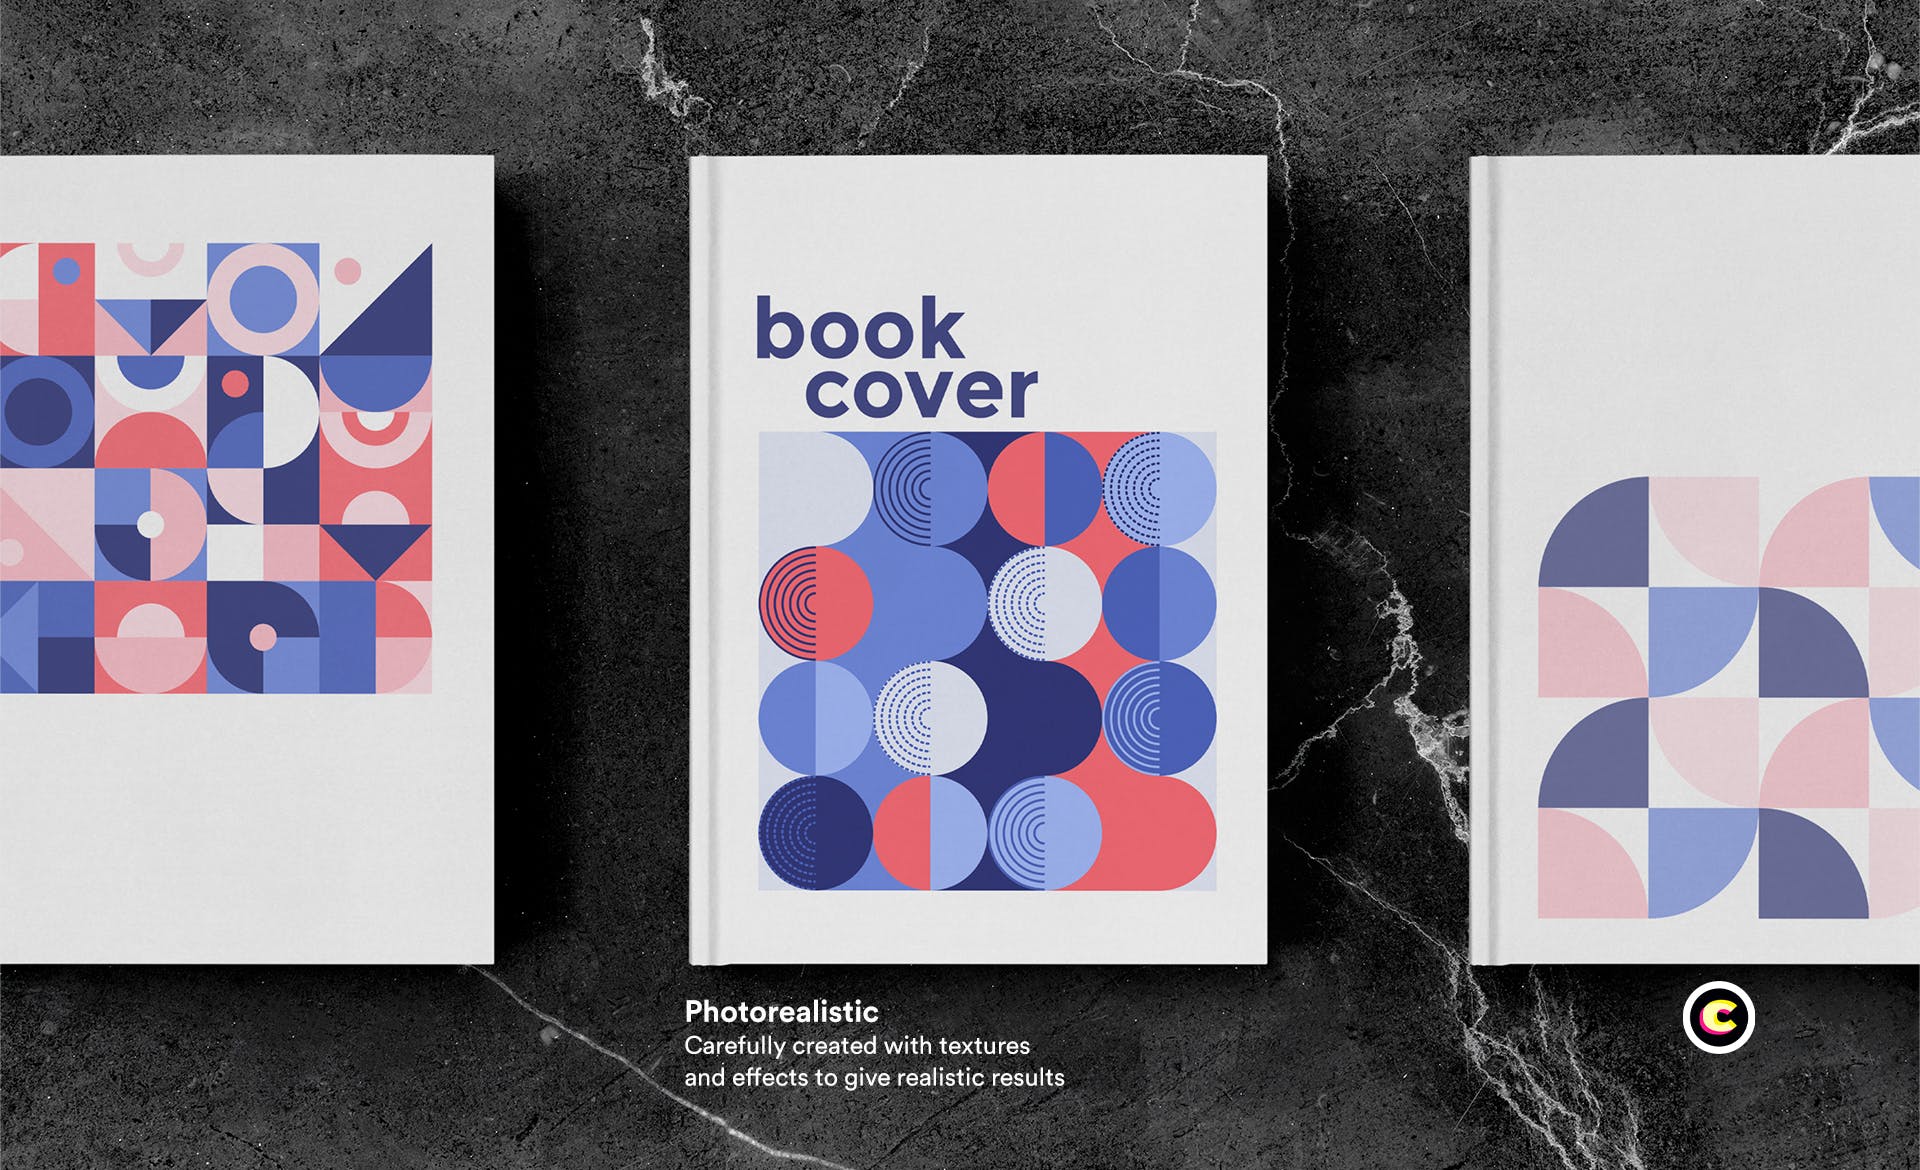 高端图书封面艺术设计图样机蚂蚁素材精选模板 Book Cover Mockup set插图(3)